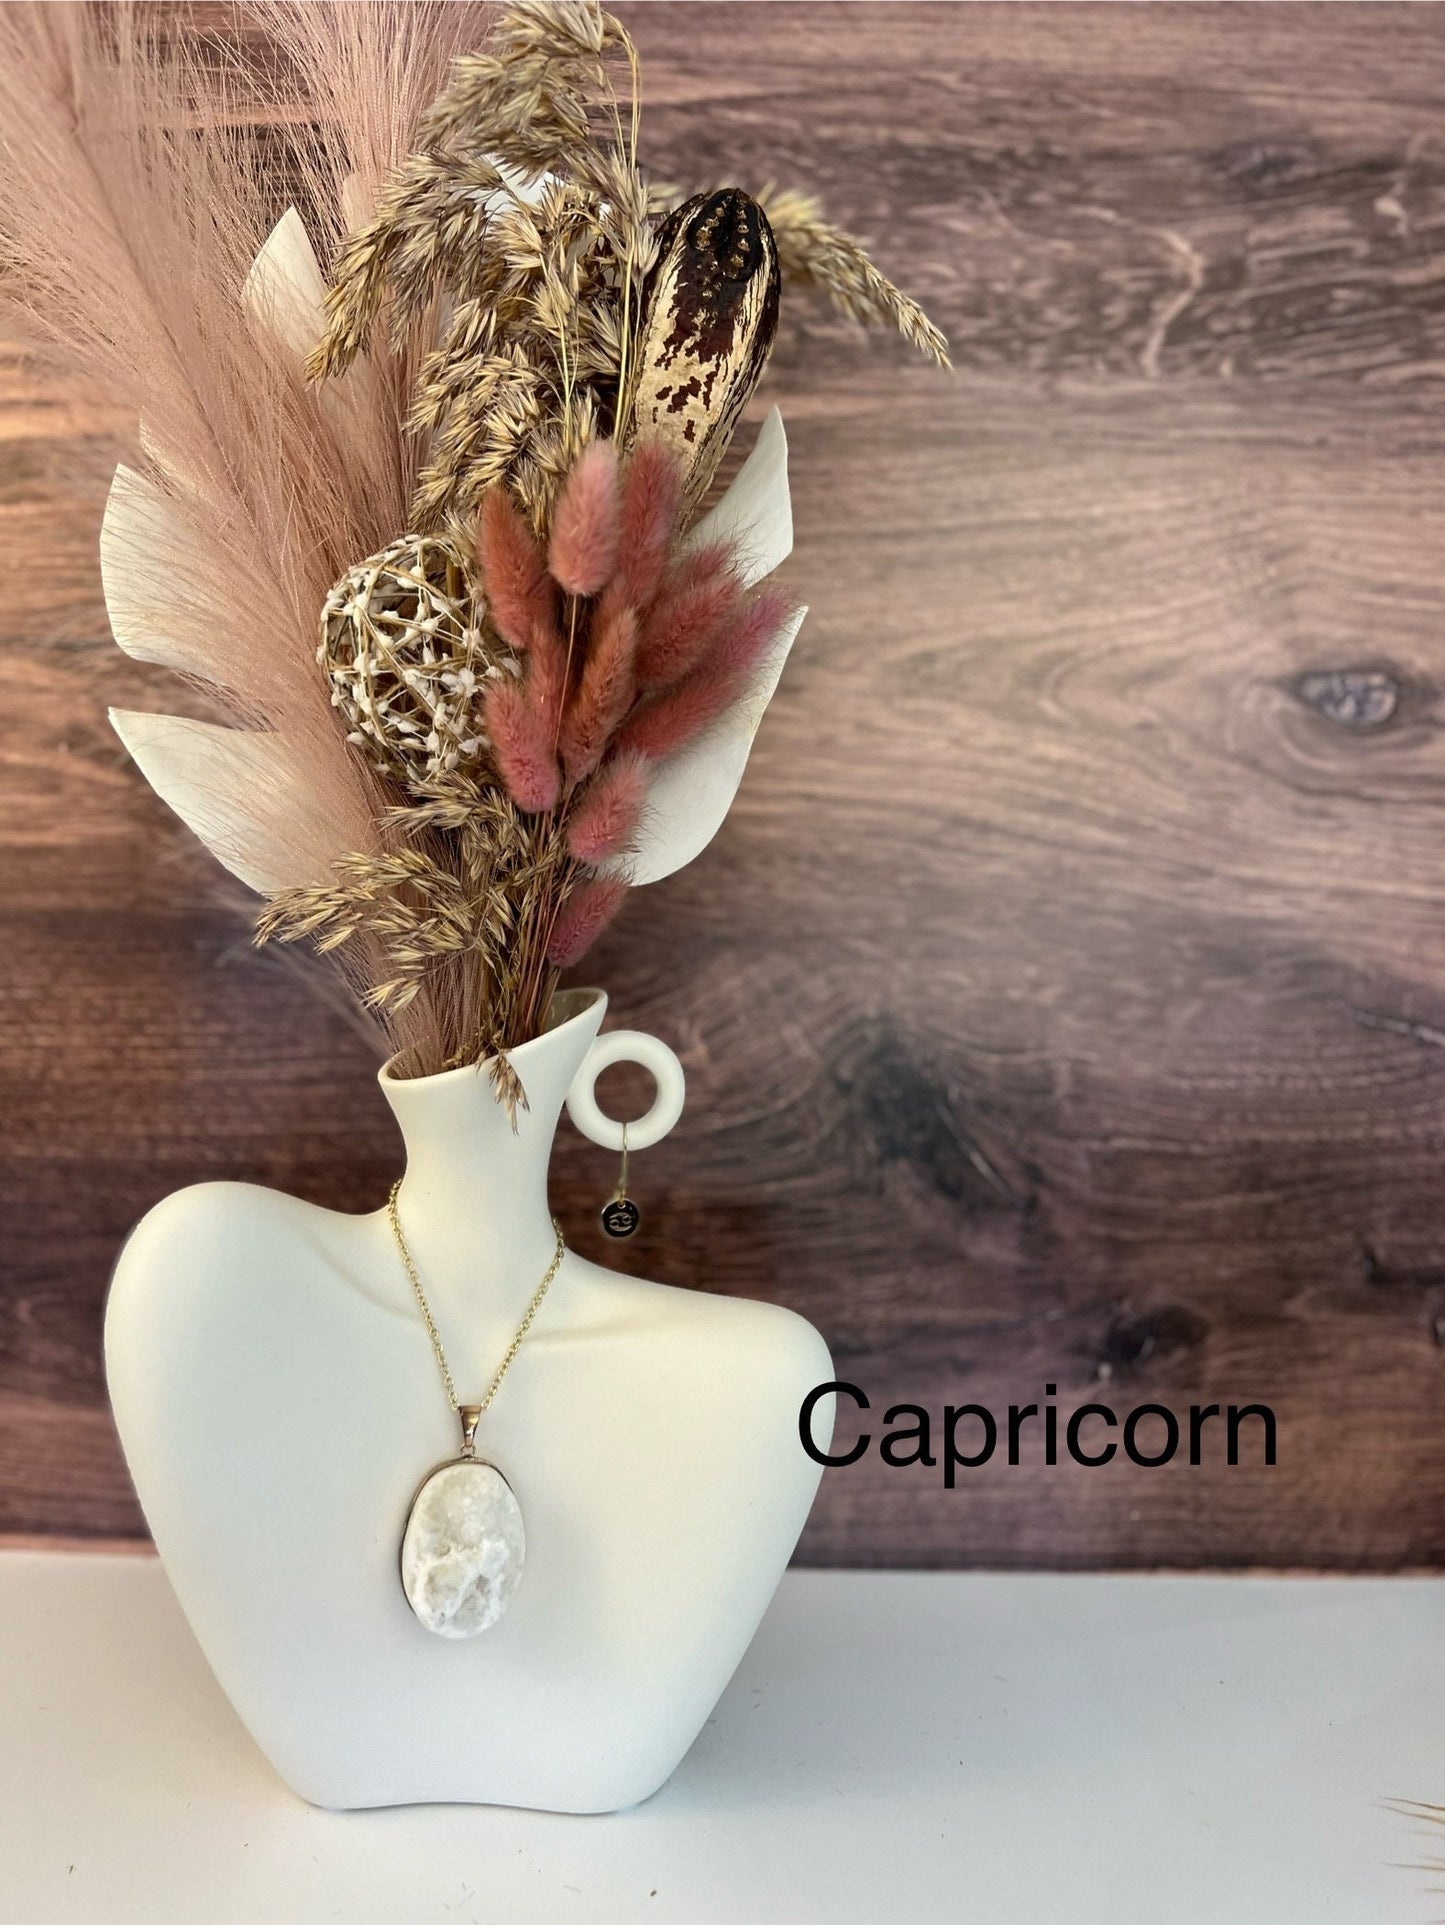 Capricorn gift. Artificial floral arrangement. Ceramic centerpiece with faux florals. Faux Floral arrangement for home decor. Fall decor.